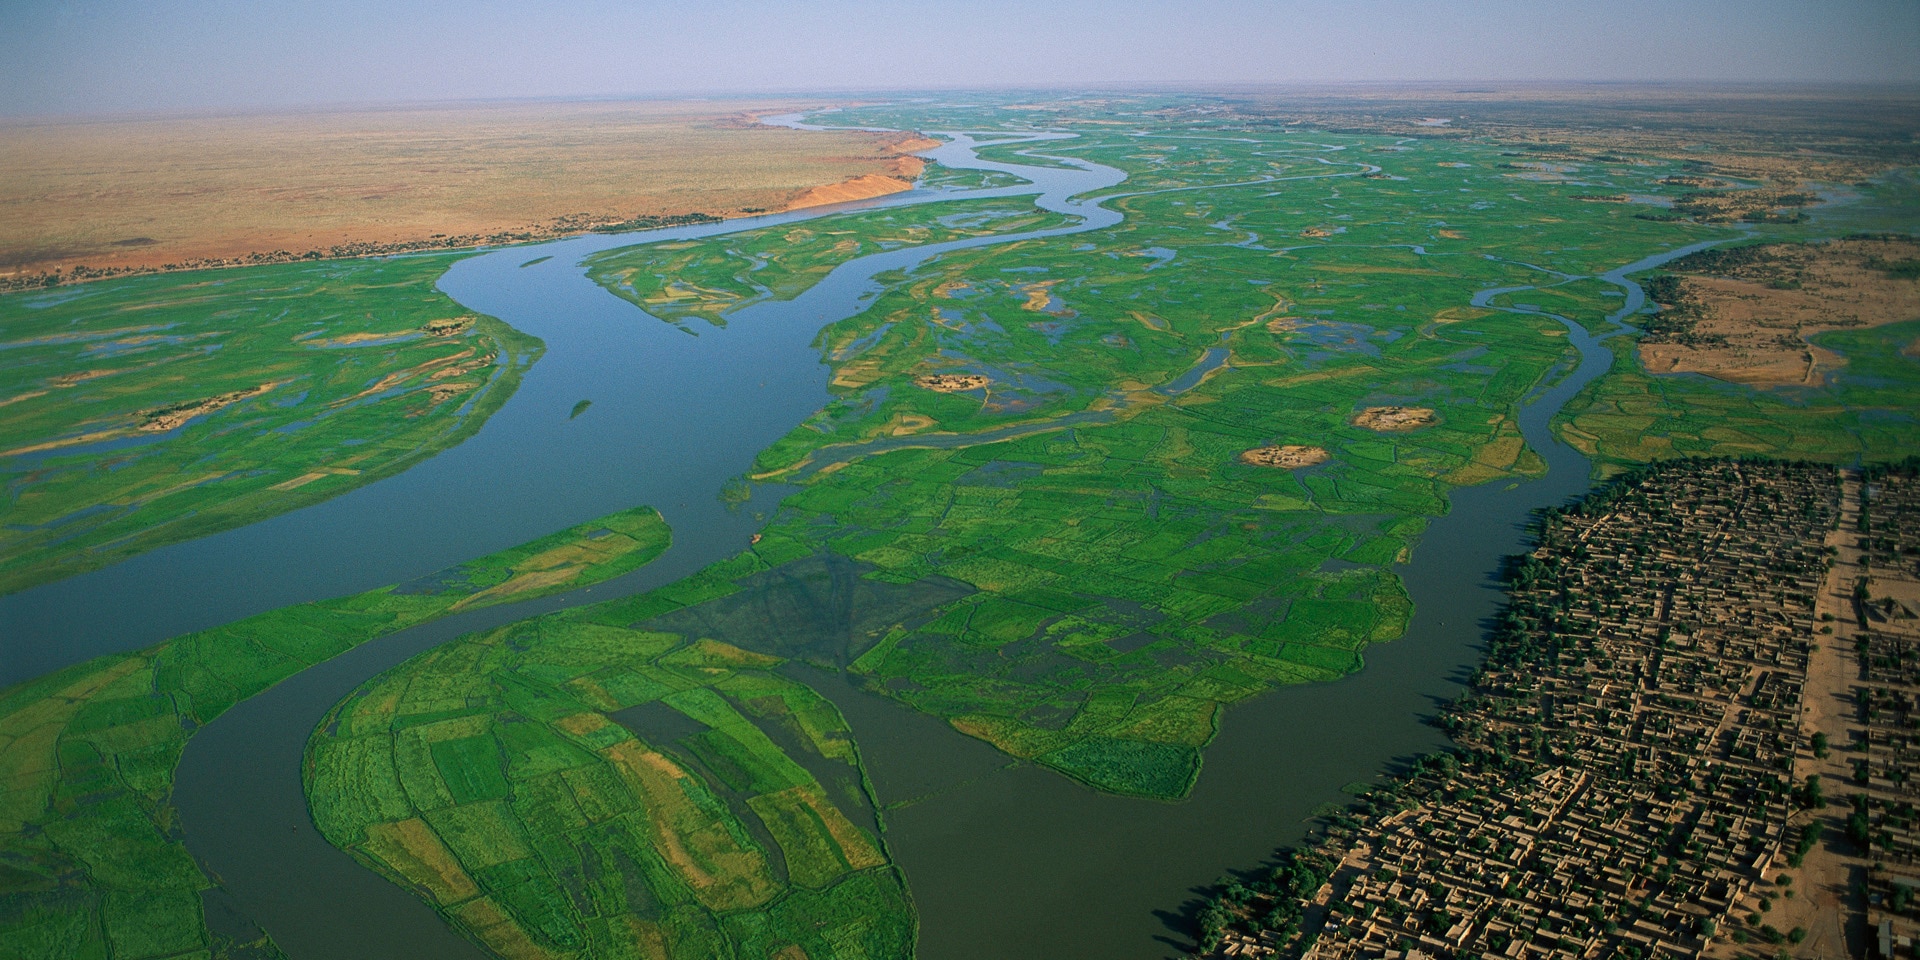  Rizières irriguées par le fleuve Niger au Mali.